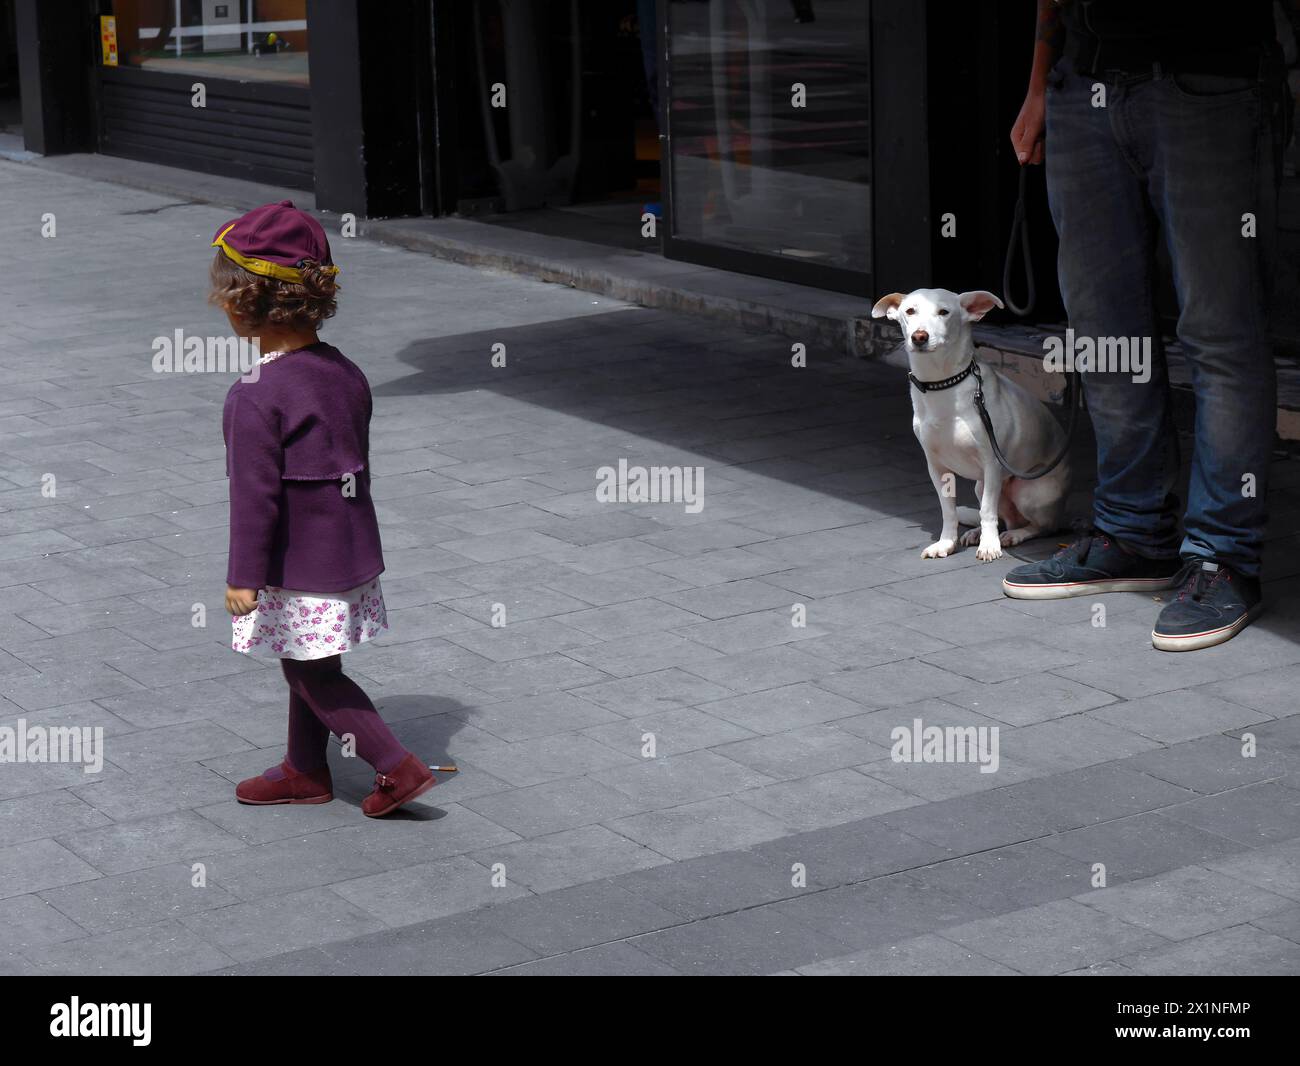 Petite fille en robe violette marche passant prudemment exprimant sa peur du chien blanc en laisse qui se tient debout avec son propriétaire, animal de compagnie, la vie locale en fou Banque D'Images